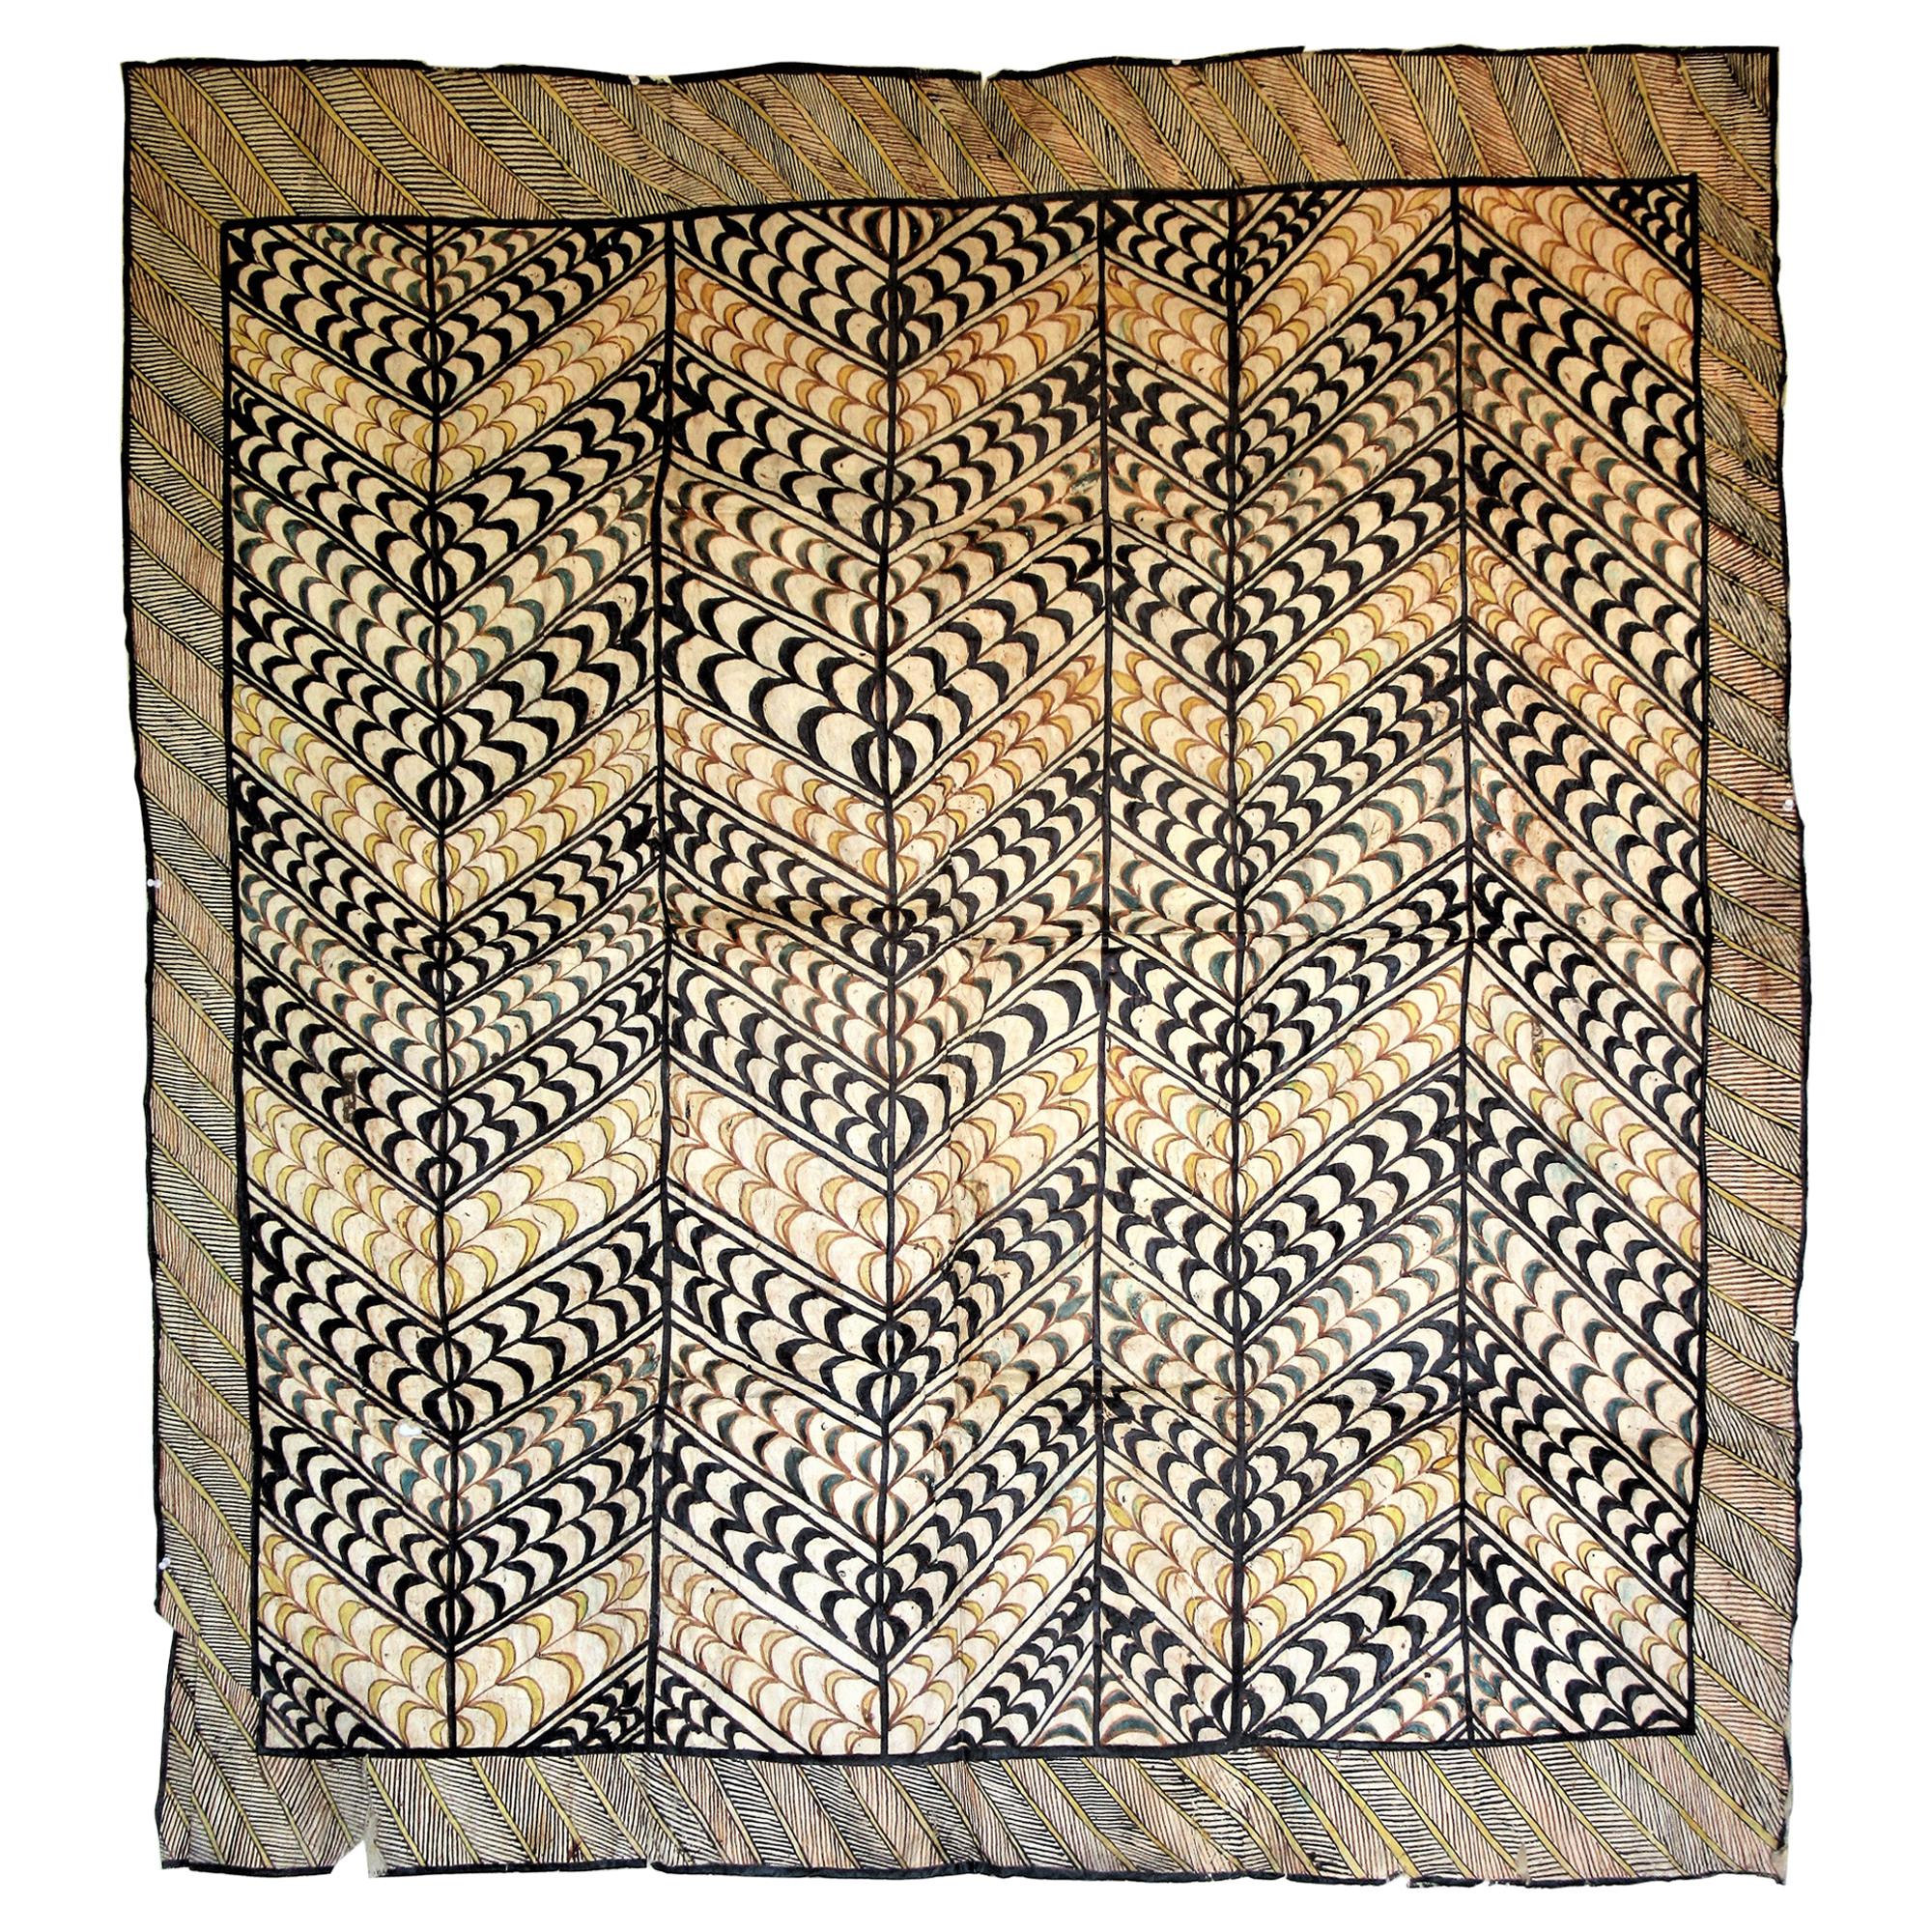 Antique 19th Century Tapa Cloth